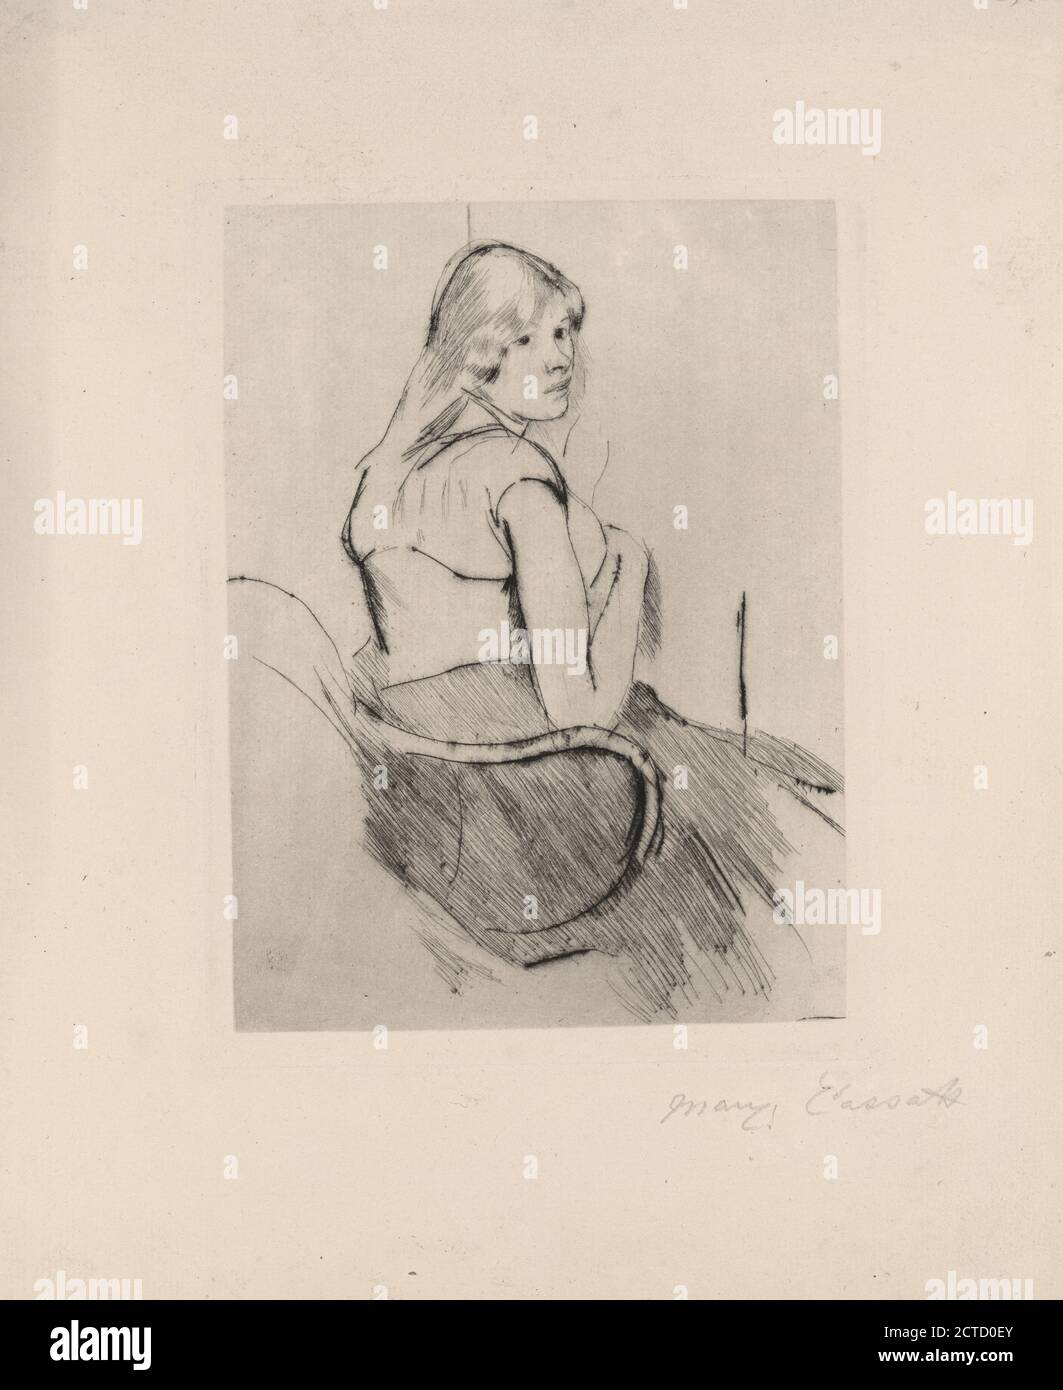 En deshabillé, still image, Prints, 1889, Cassatt, Mary, 1844-1926 Stock Photo